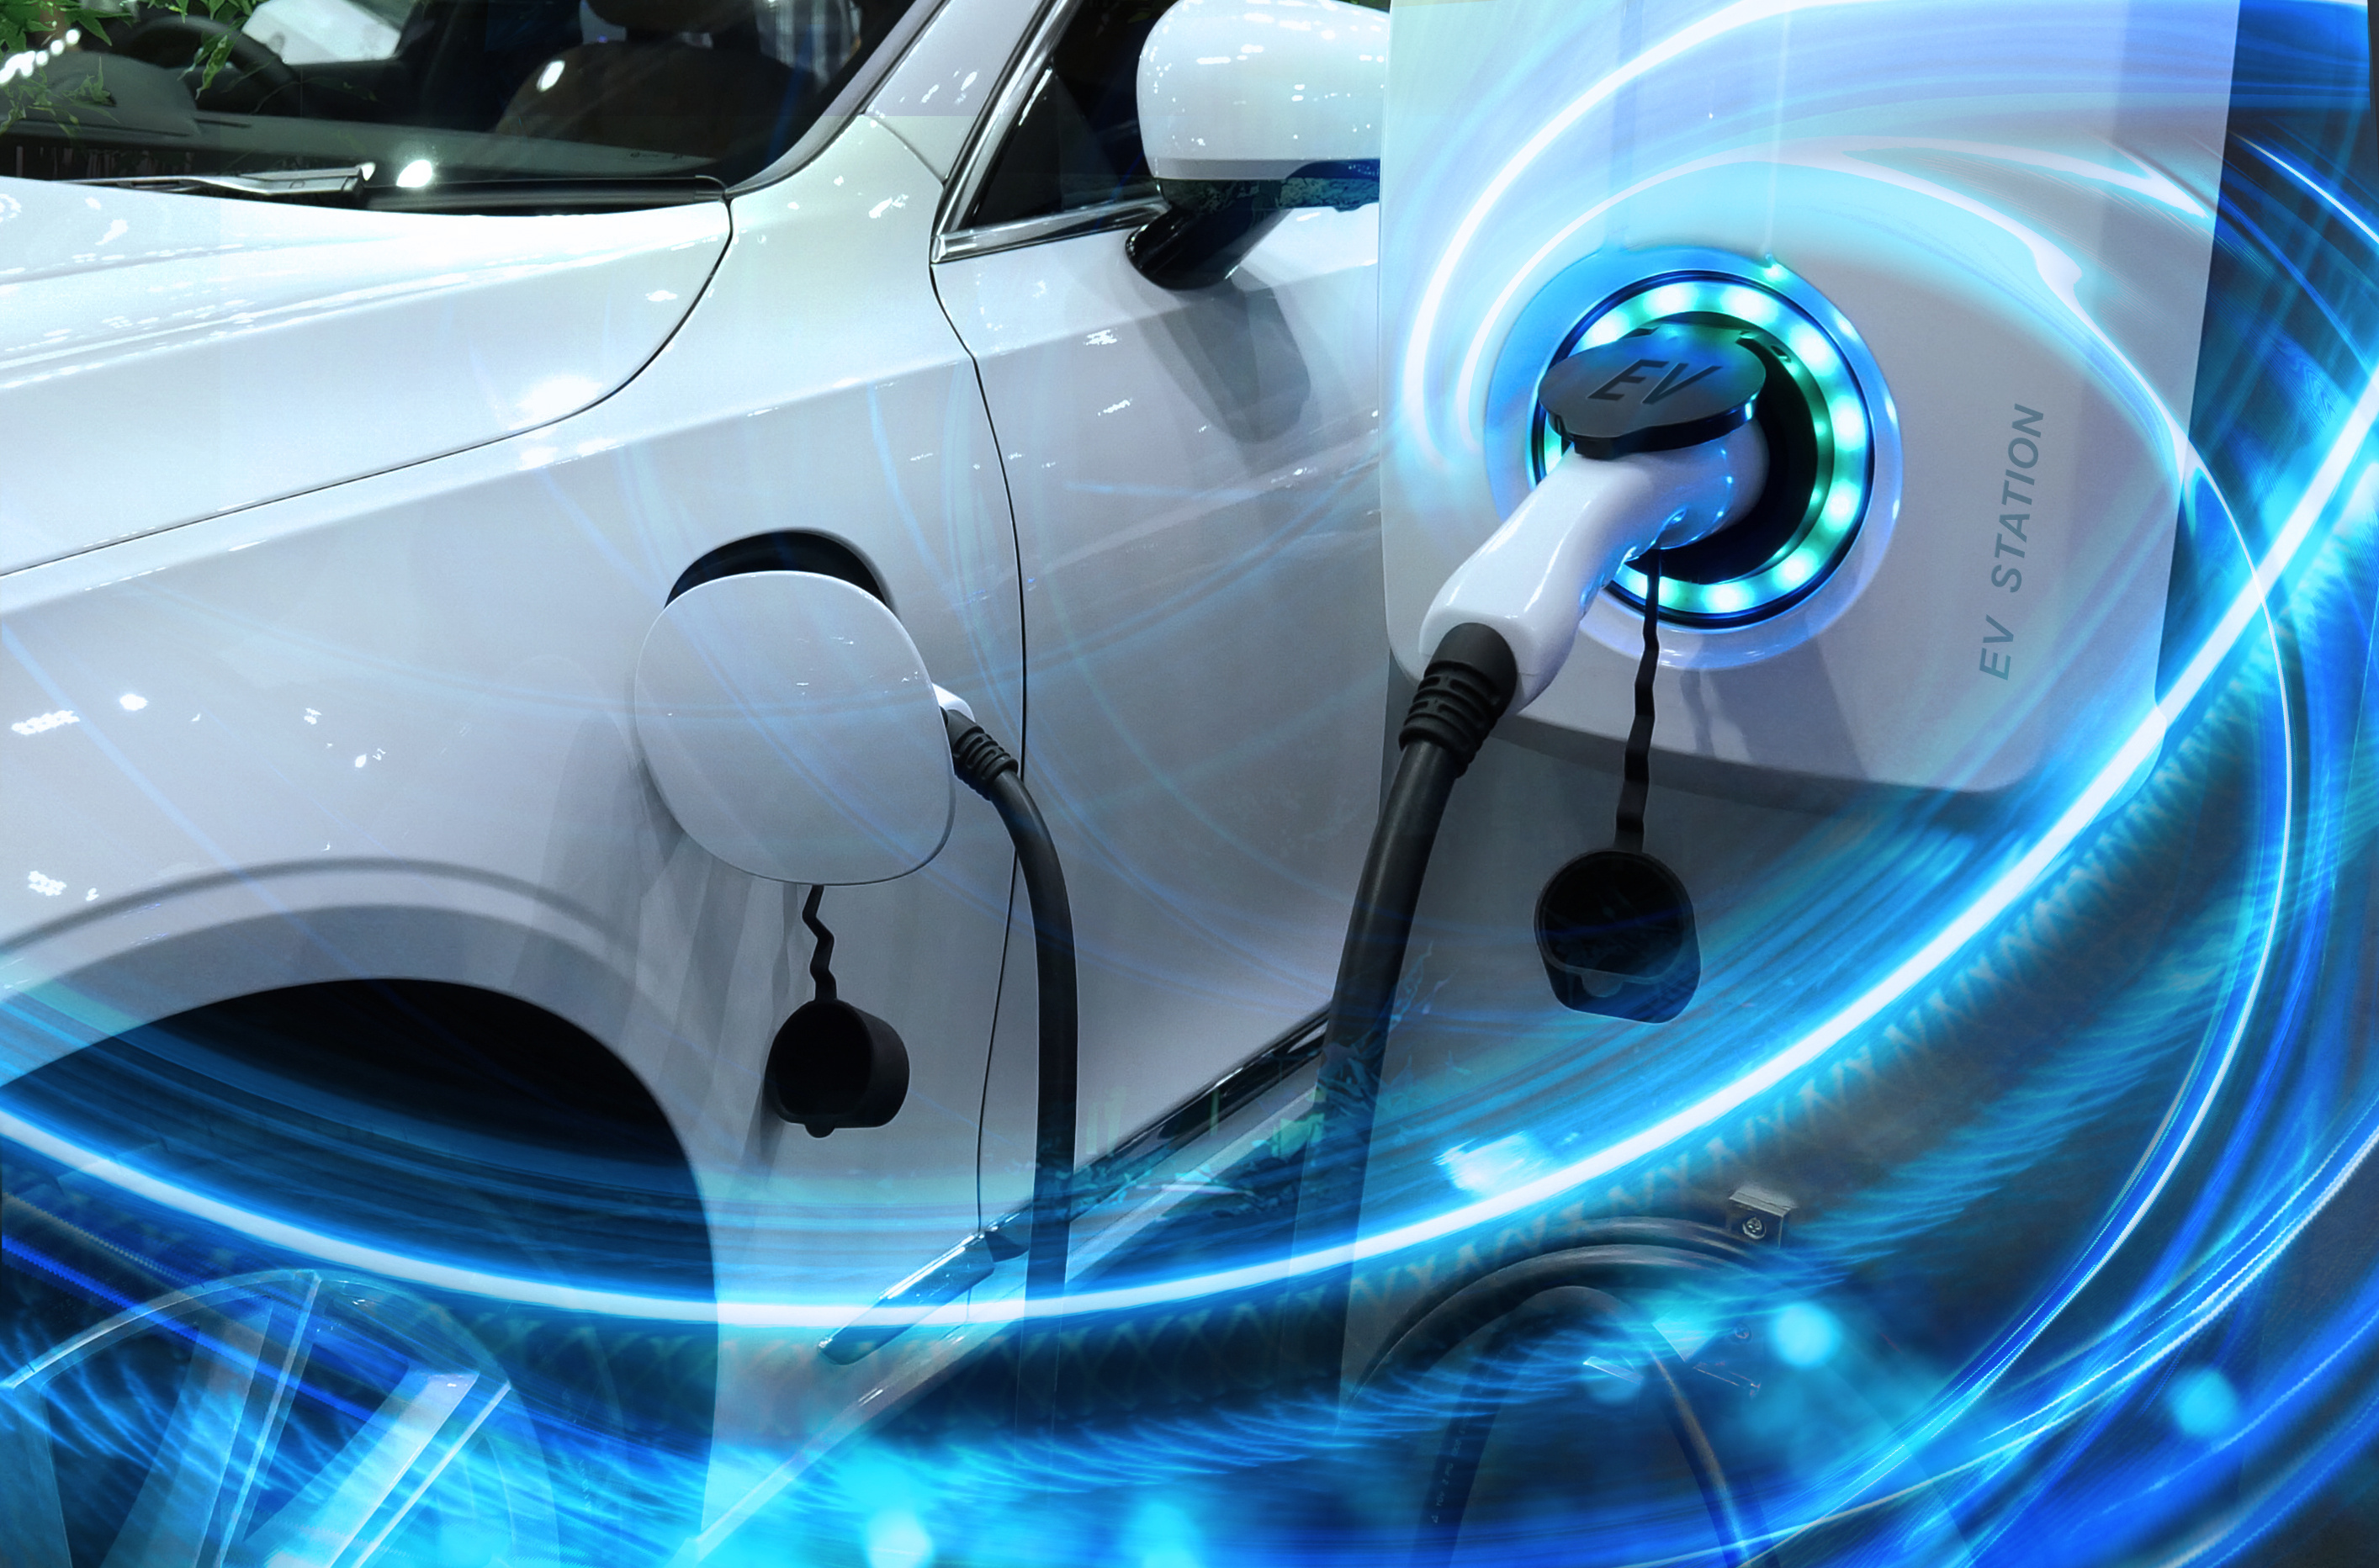 La recharge des véhicules électriques est l’un des principaux problèmes de ce type de véhicule : réseau de bornes de recharge, temps de chargement, etc. ©&nbsp;Buffaloboy, Adobe Stock